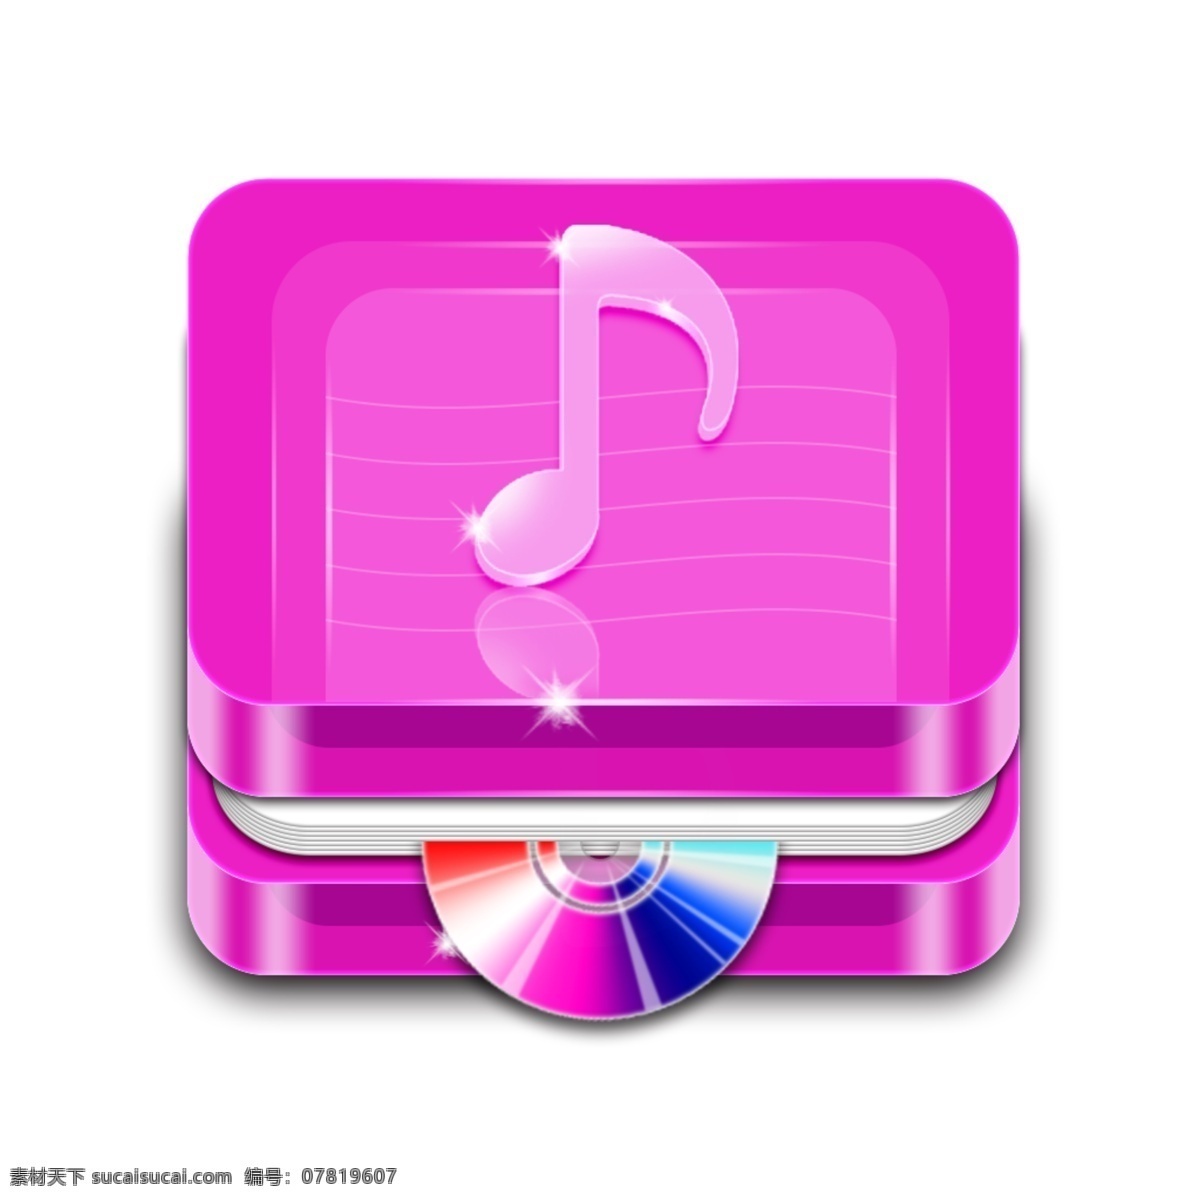 粉色音乐图标 图标 音乐 音乐图标 手绘 写实图标 icon